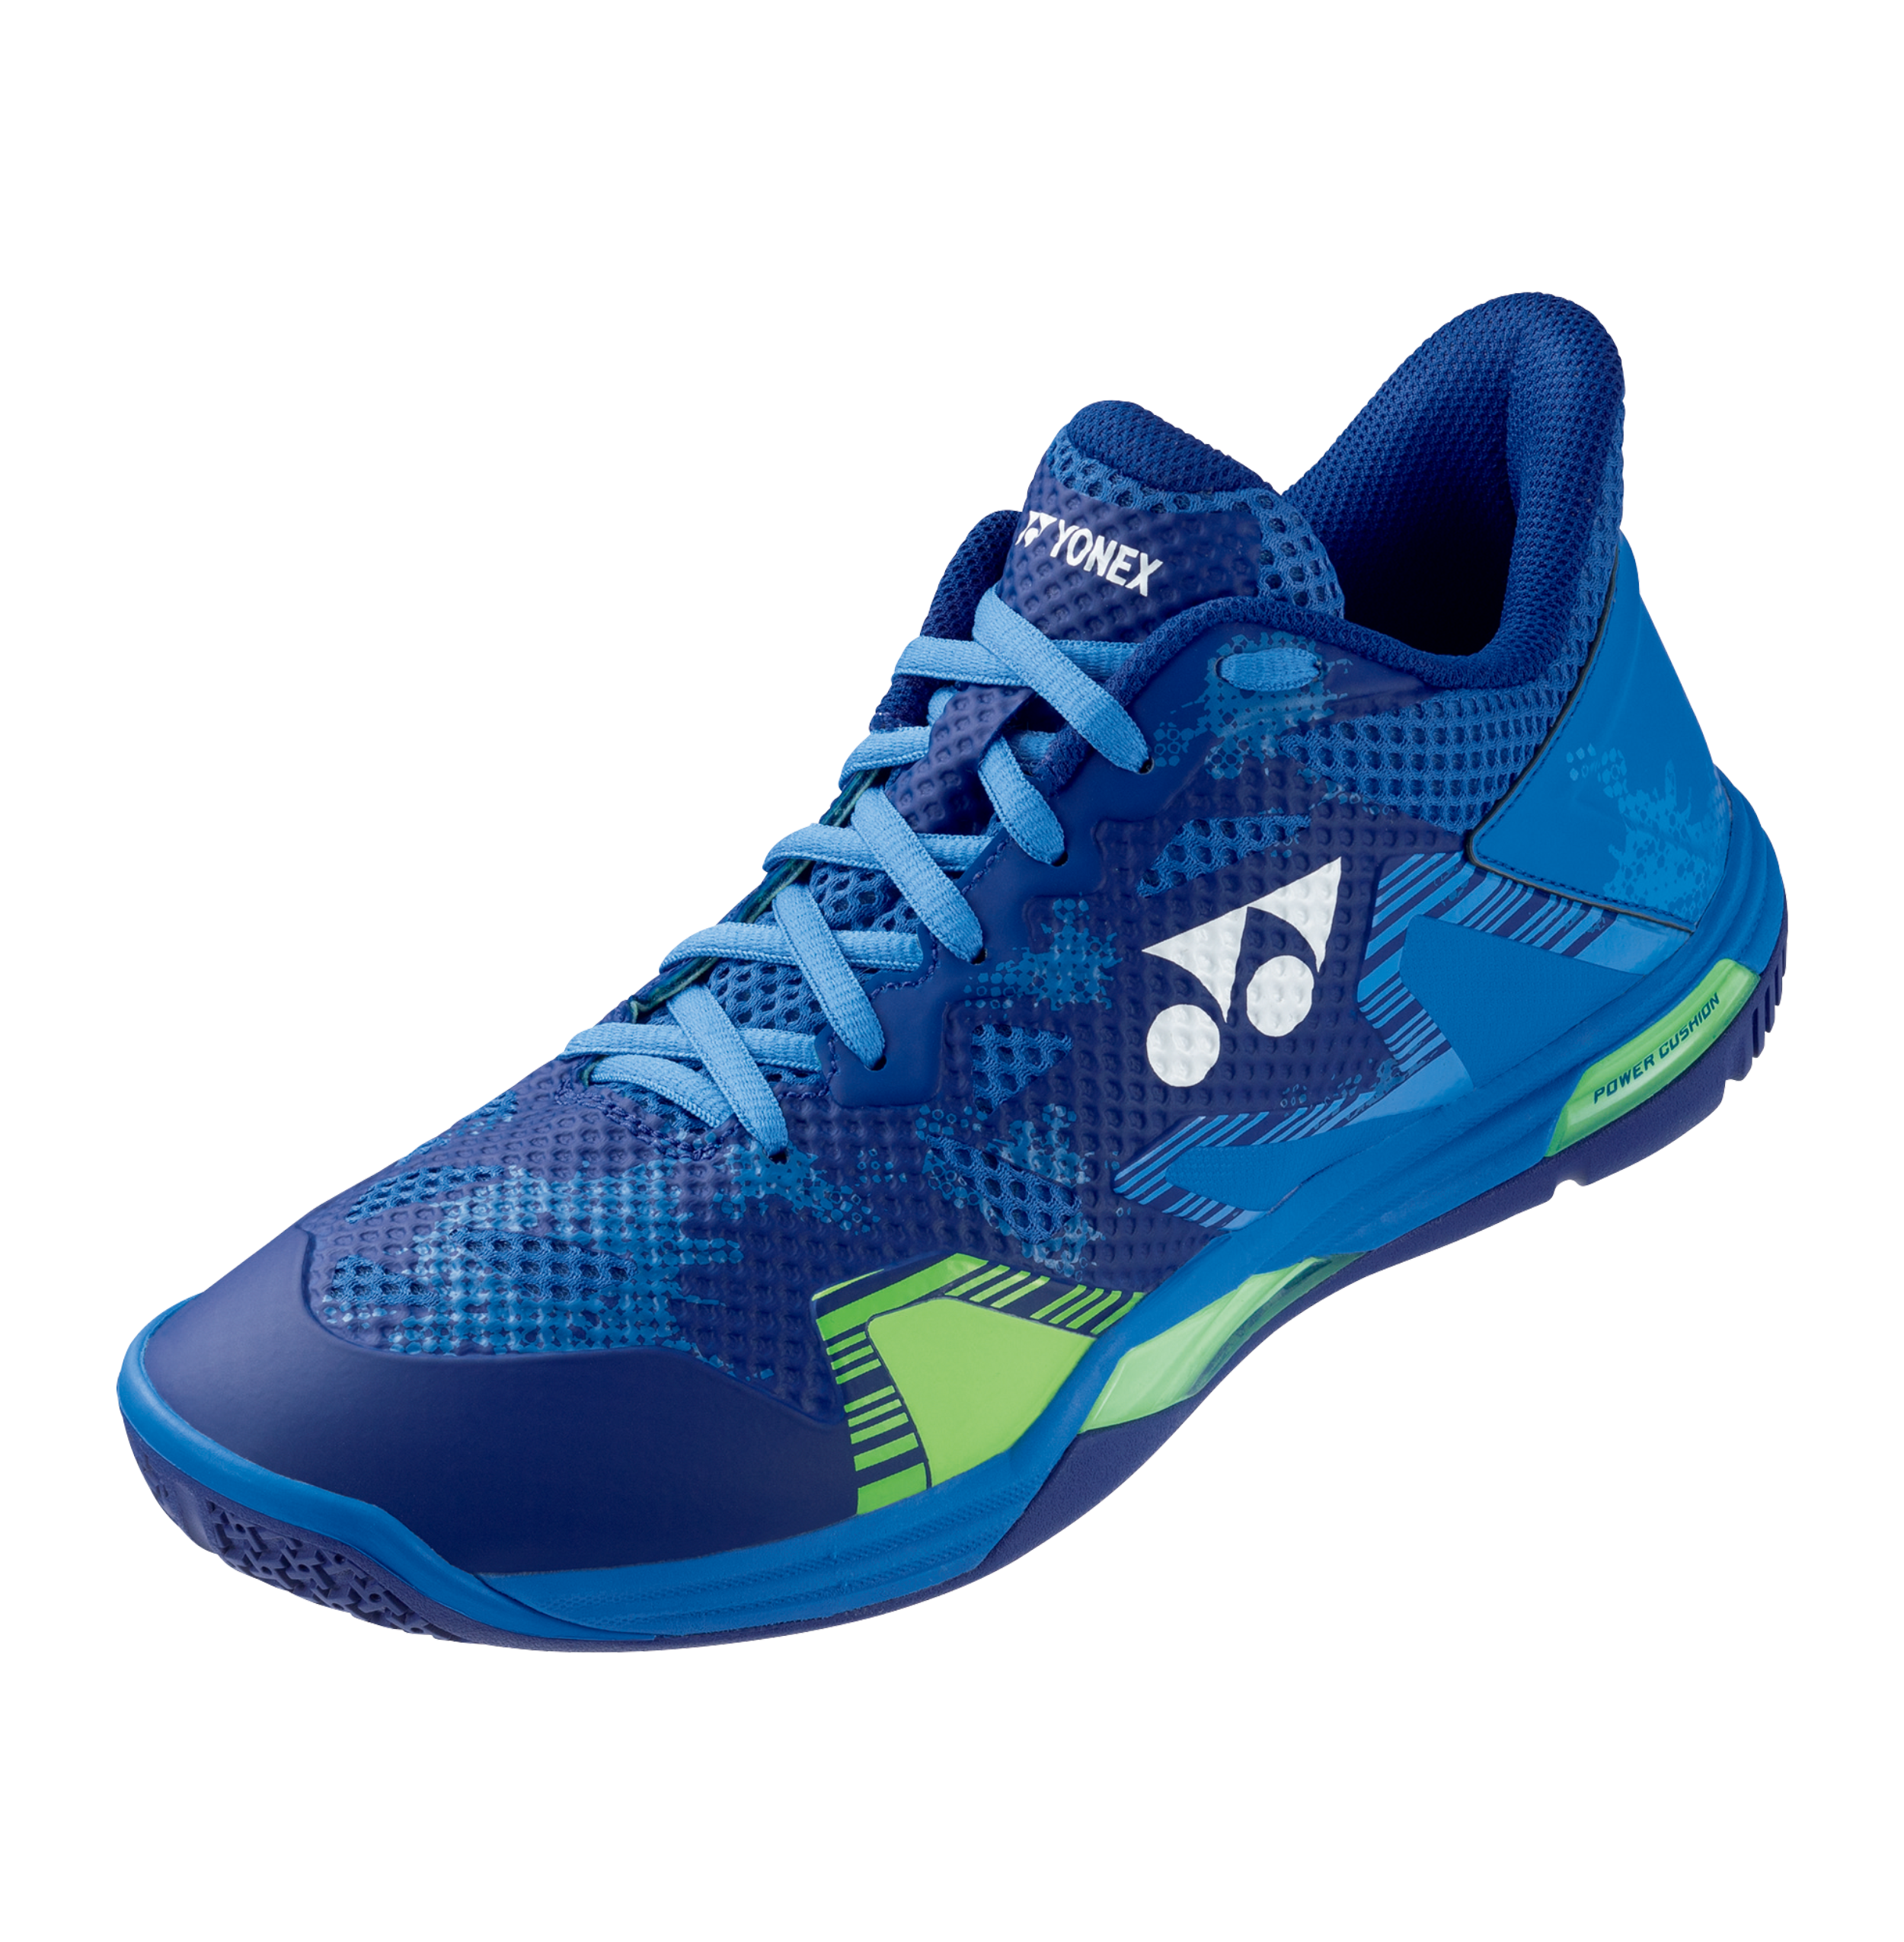 2023 Yonex badminton shoes POWER CUSHION ECLIPSION Z MEN - SHBELZ3M - NAVY BLUE